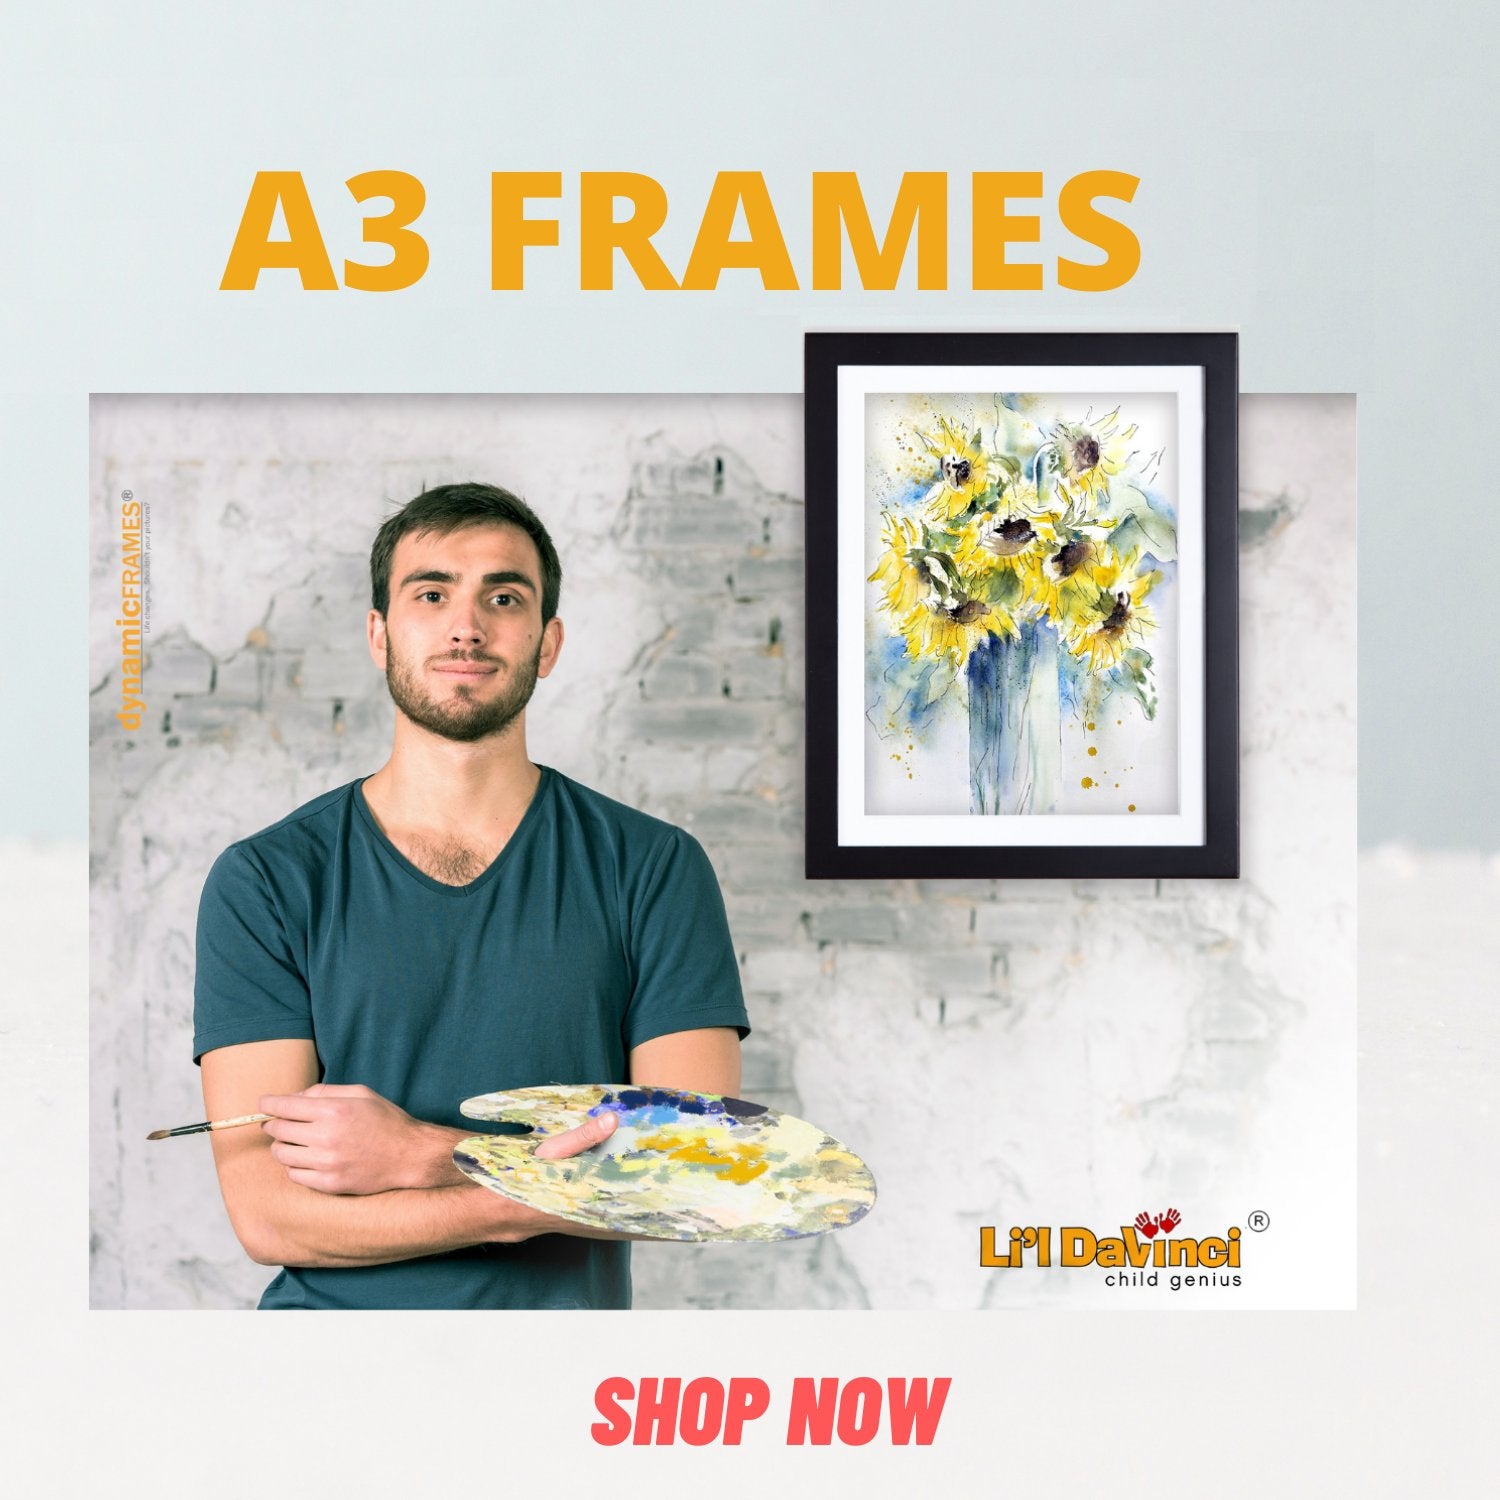 A3 Frames